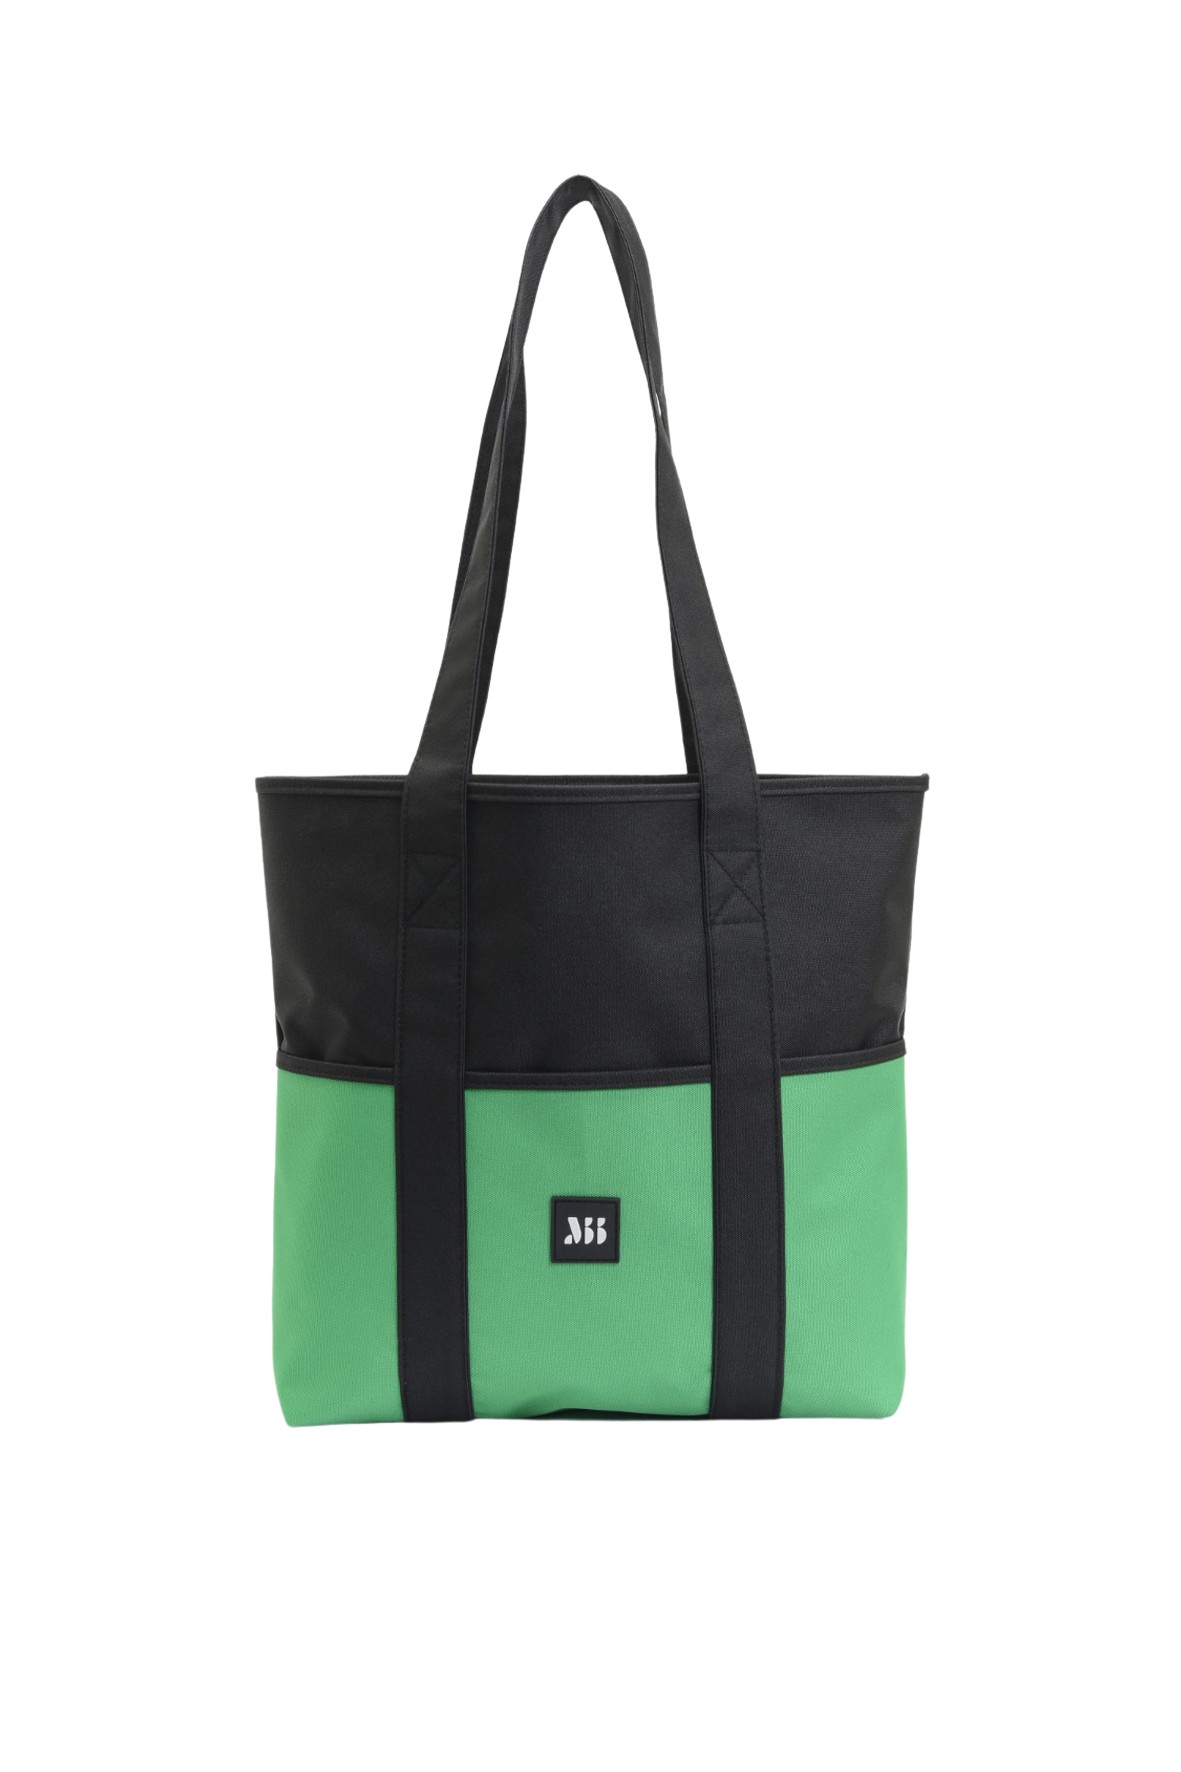 TOTE Bag / Reversible - Grass Green